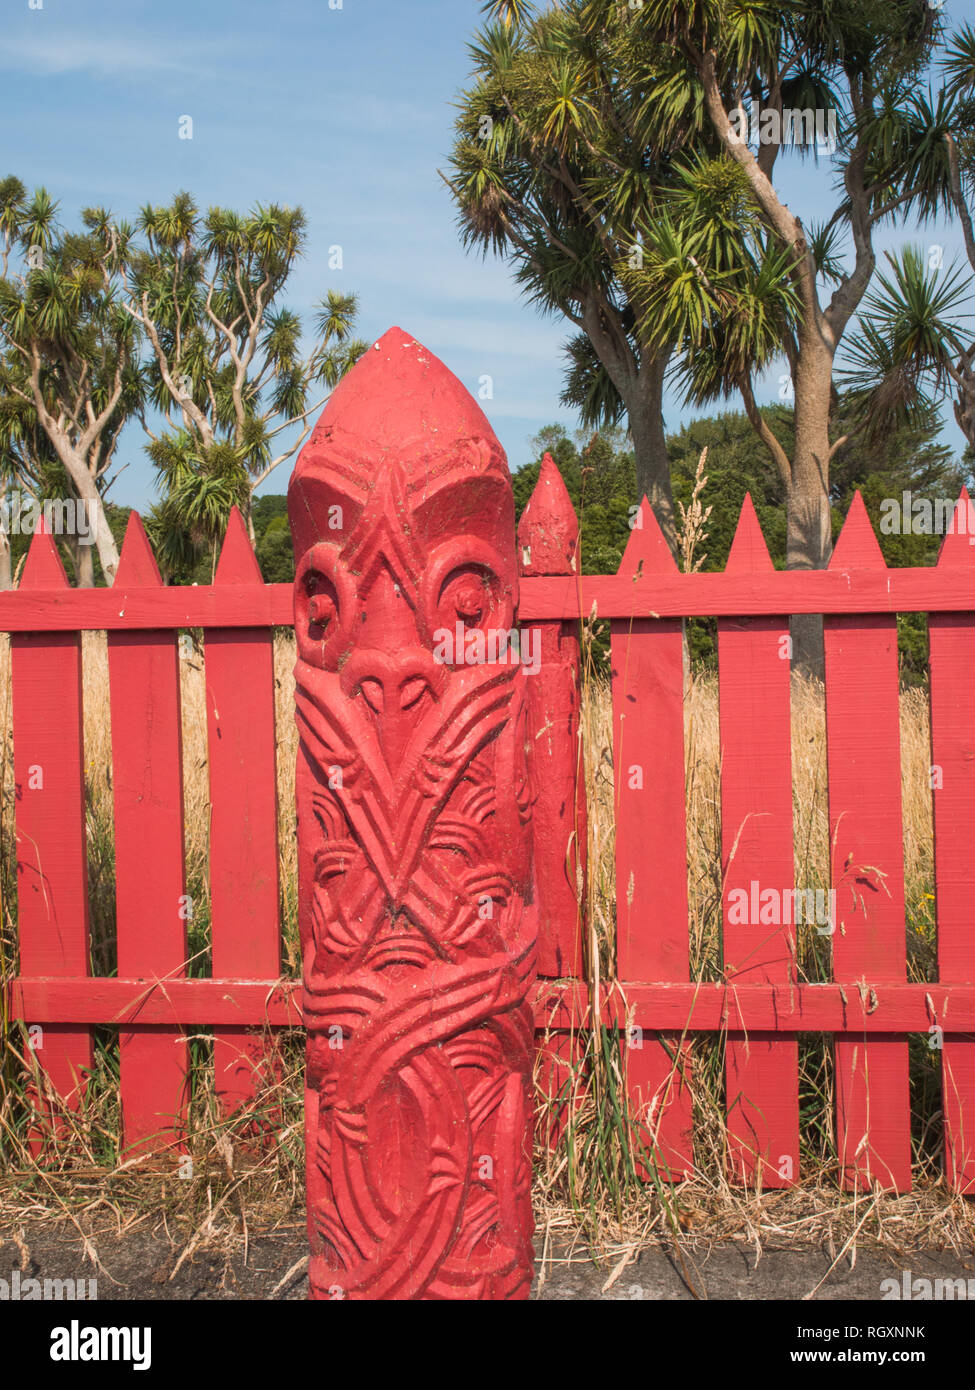 Pou whenua post in tuahu recinto sacro, Turuturu Mokai pa, Hawera, Taranaki, Nuova Zelanda. Ngati Tupaia hapu di Ngati Ruanui sono kaitiaki guardiani. Foto Stock